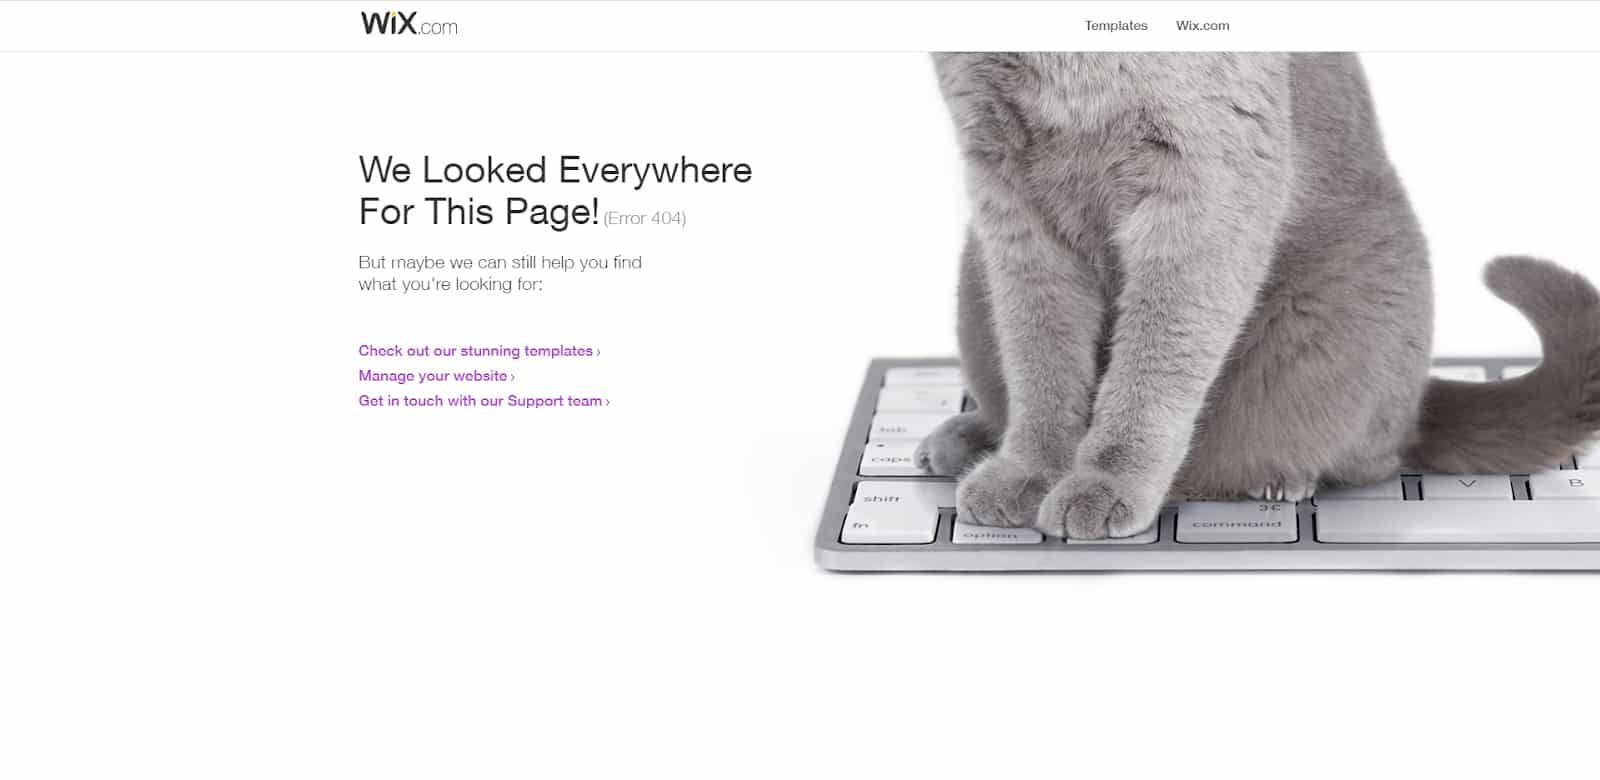 Wix 404 error page.